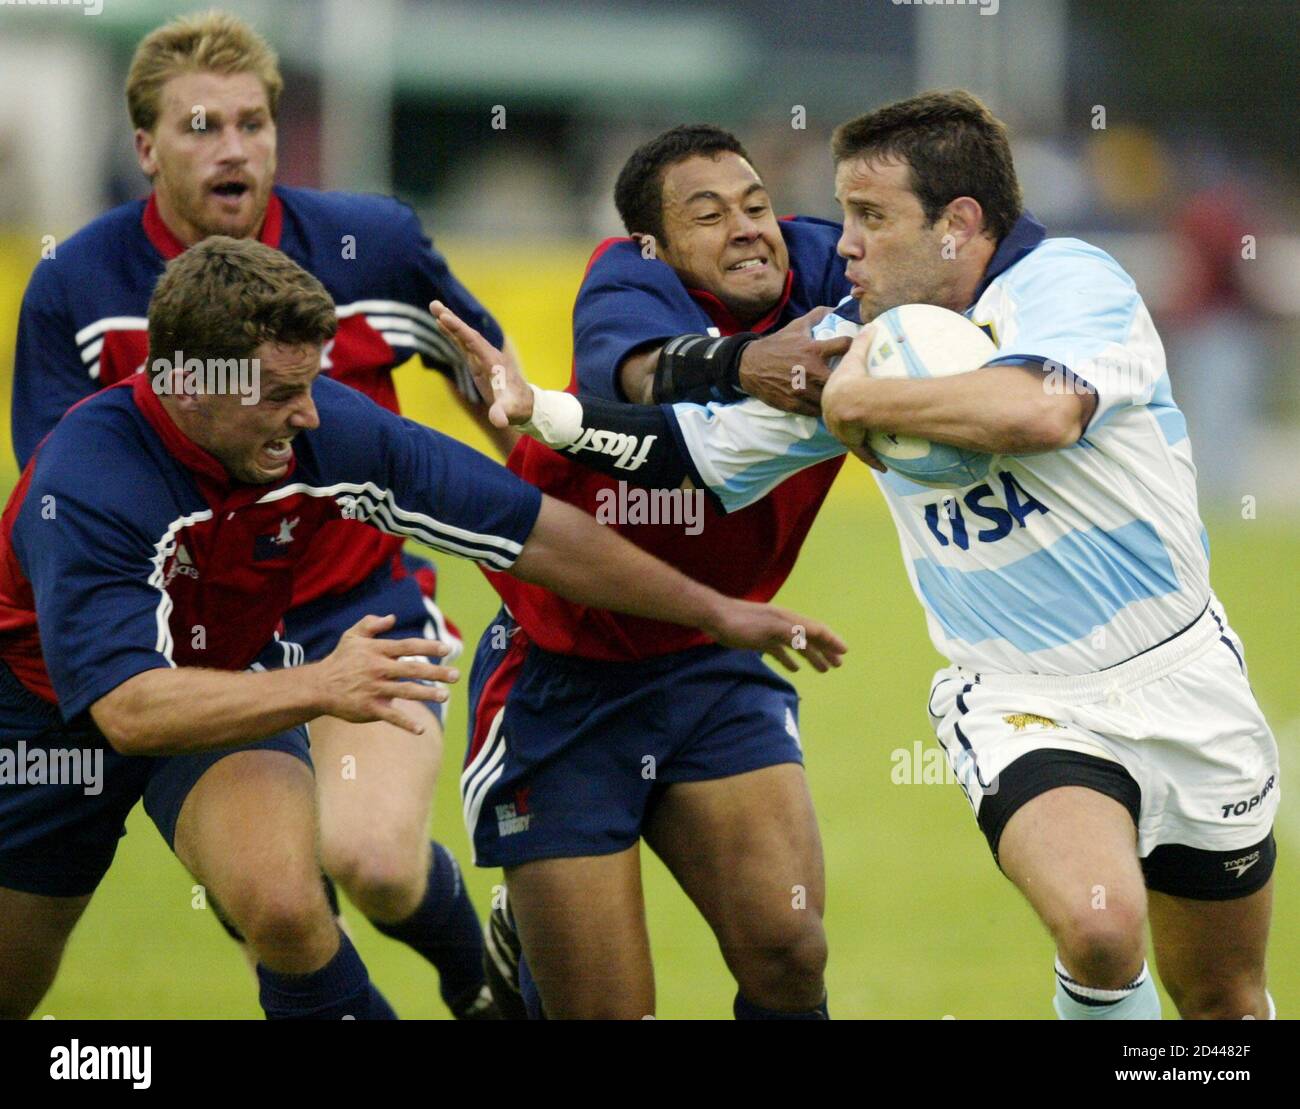 Diego Albanese (R), de la Argentina los Pumas, imputa a los Estados Unidos  la defensa de Kimball Kjar (L), Jone Naqica (C), y Jacob Waasdorp (L  atrás), en su partido de rugby